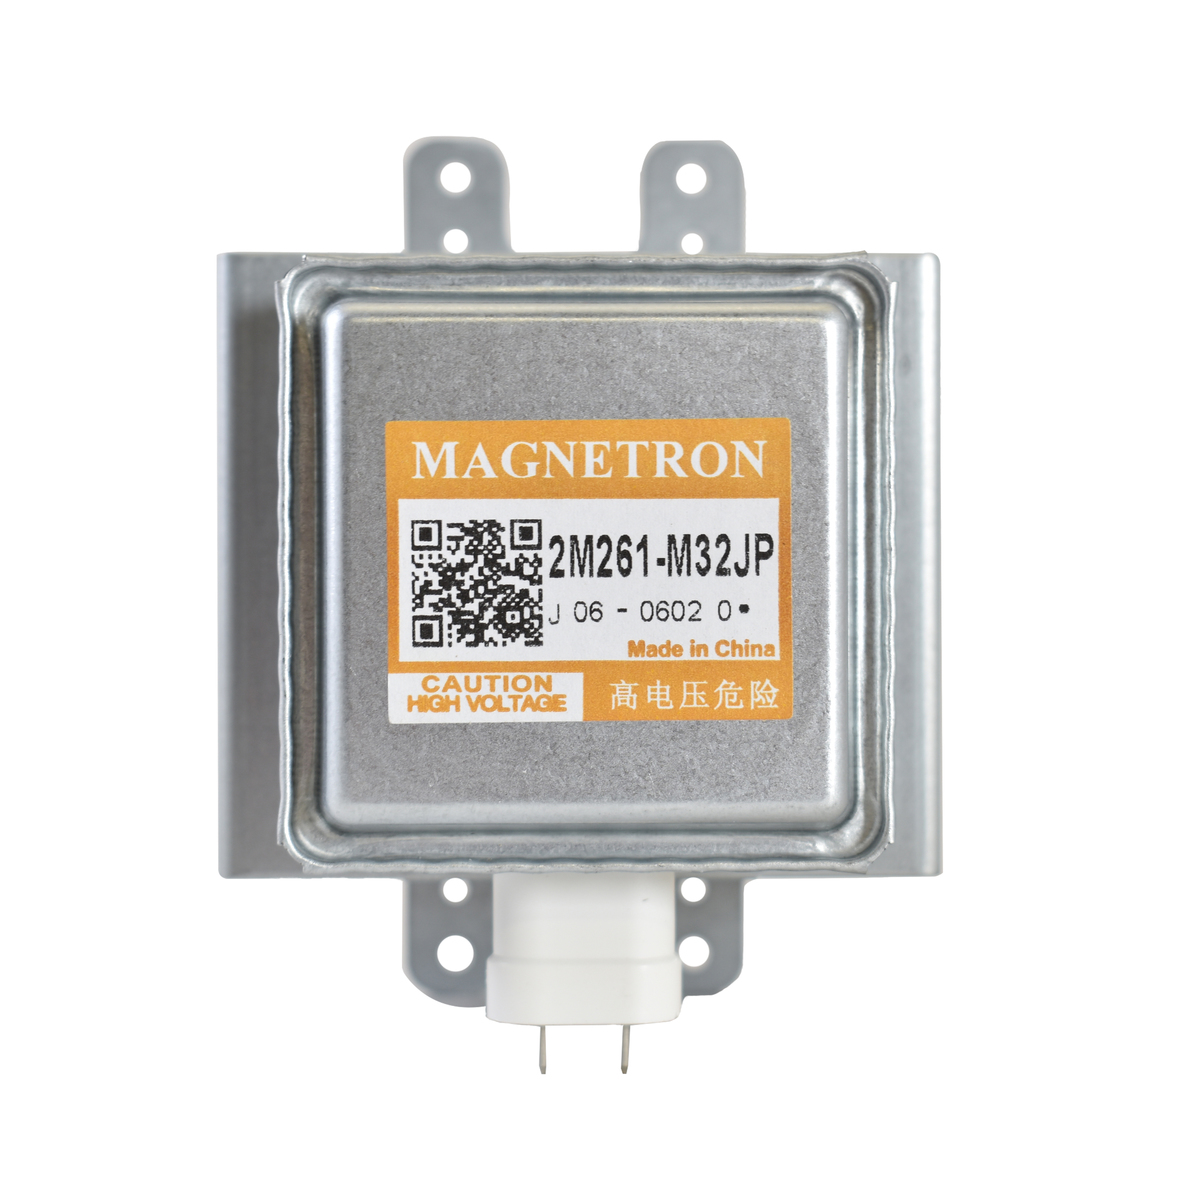 Panasonic Microwave Magnetron. Part #2M261-M32JP